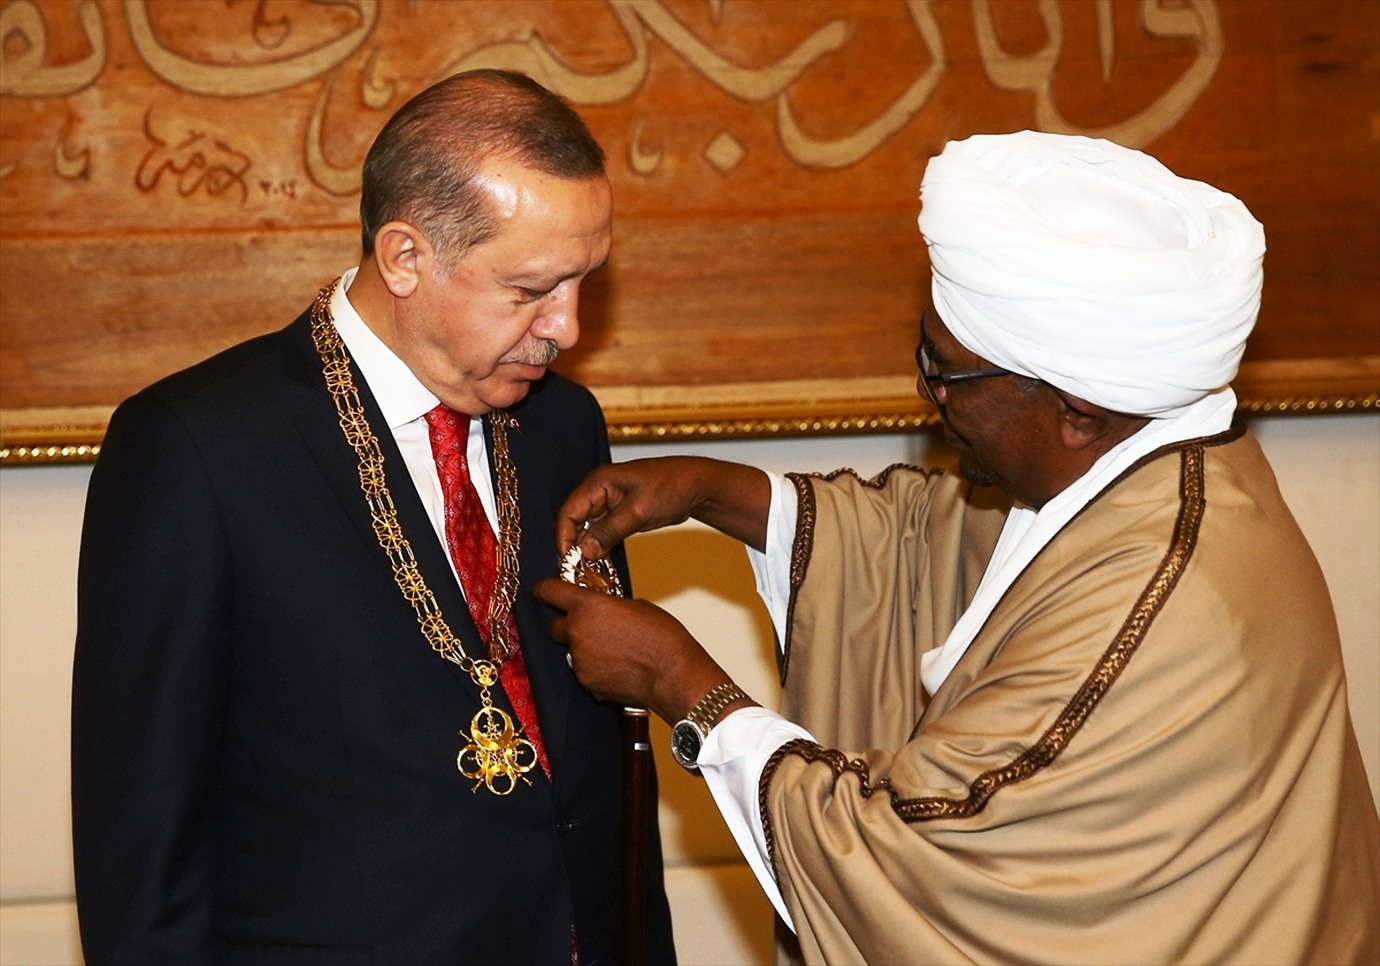 الرئيس السوداني المعزول عمر البشير يوسم الرئيس التركي رجب طيب اردوغان